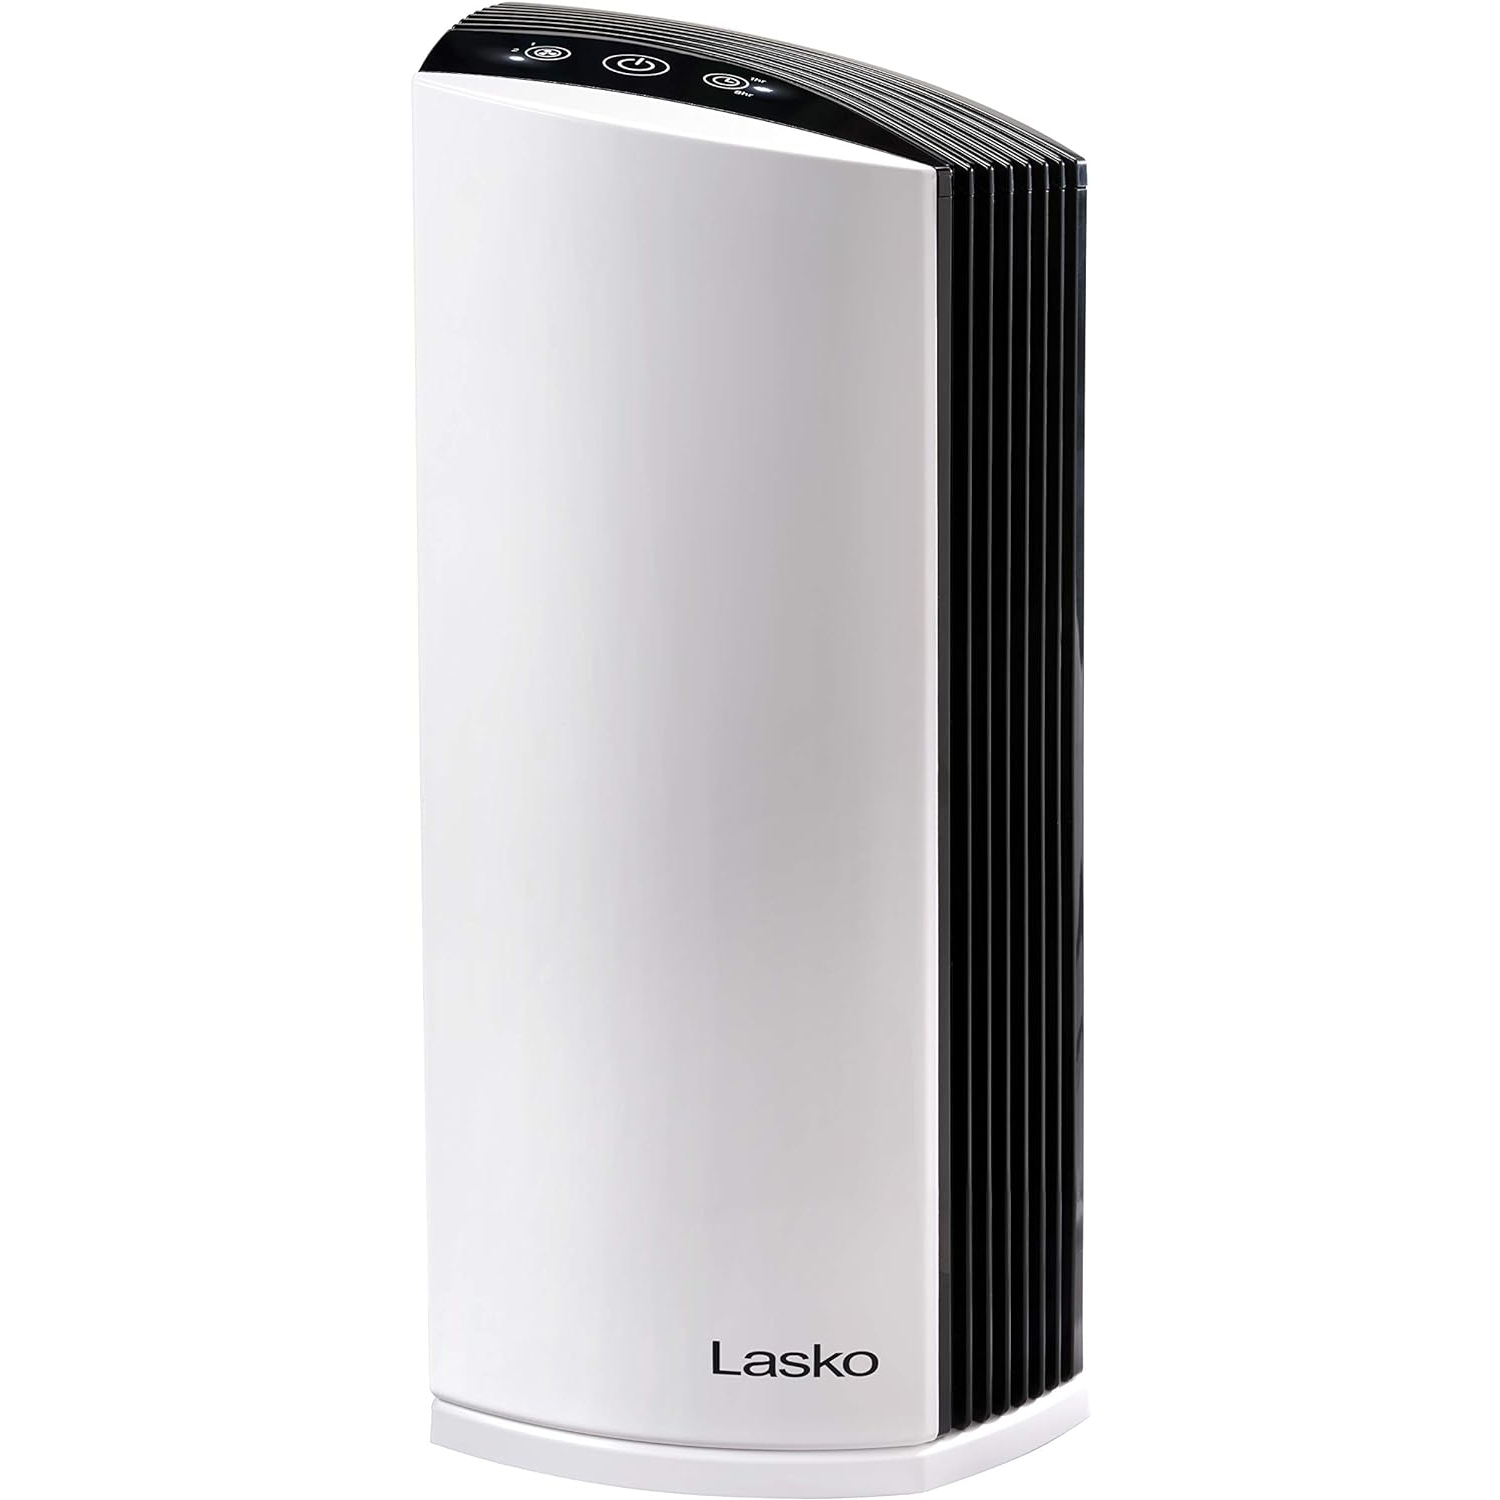 Lasko HEPA Filter Room Air Purifier